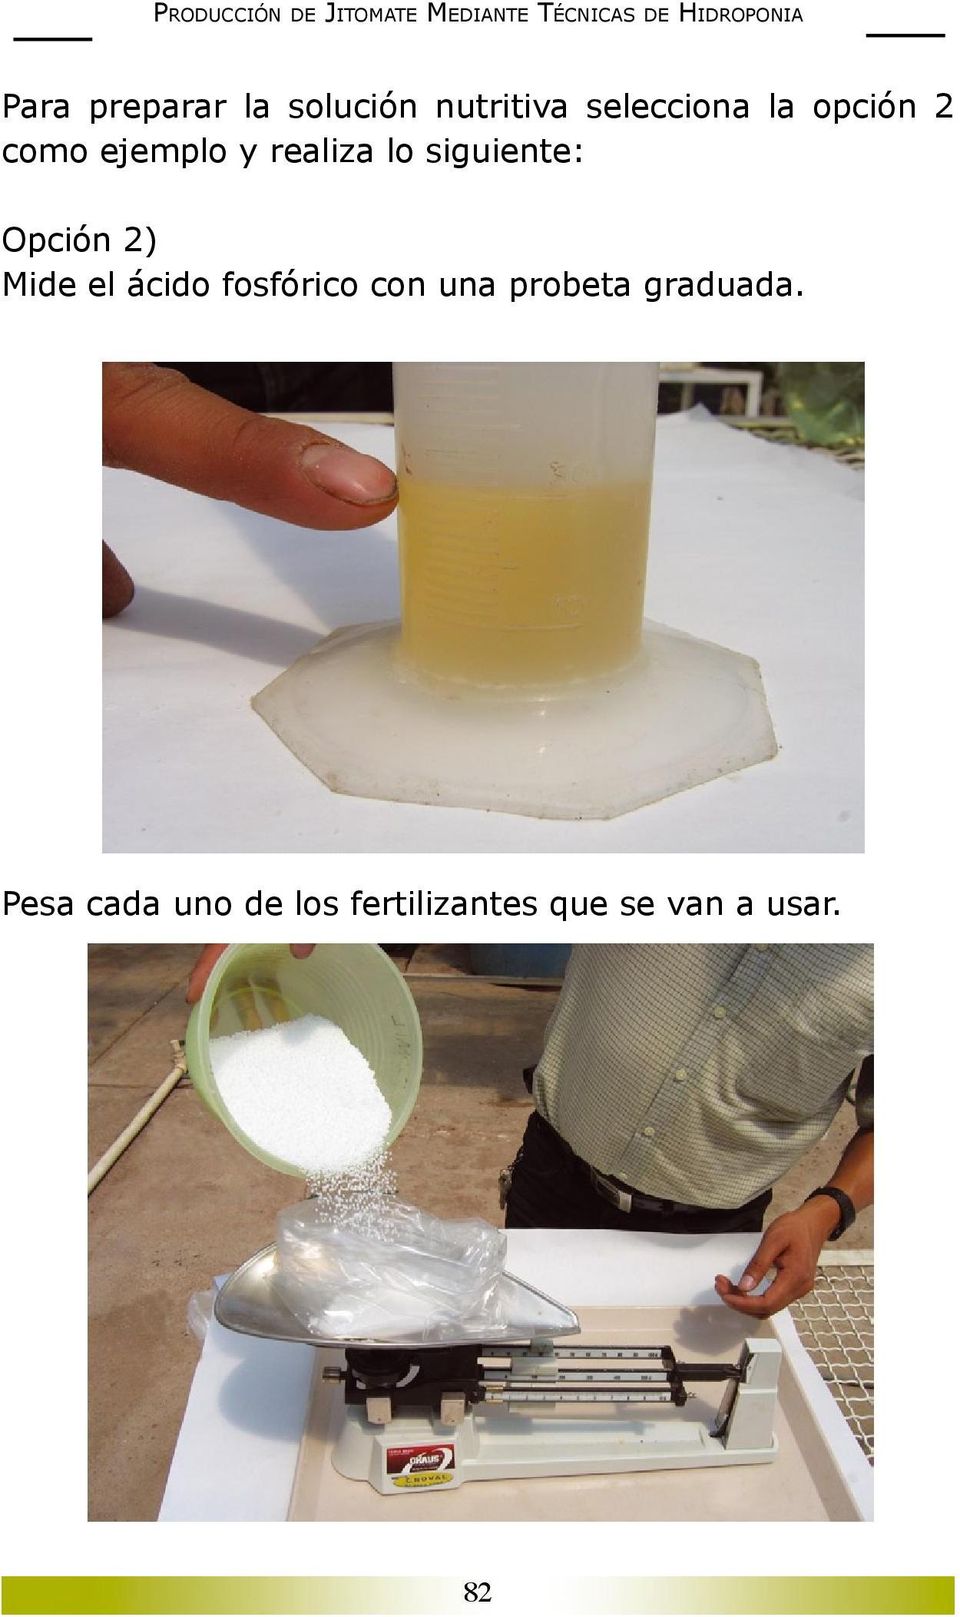 2) Mide el ácido fosfórico con una probeta graduada.